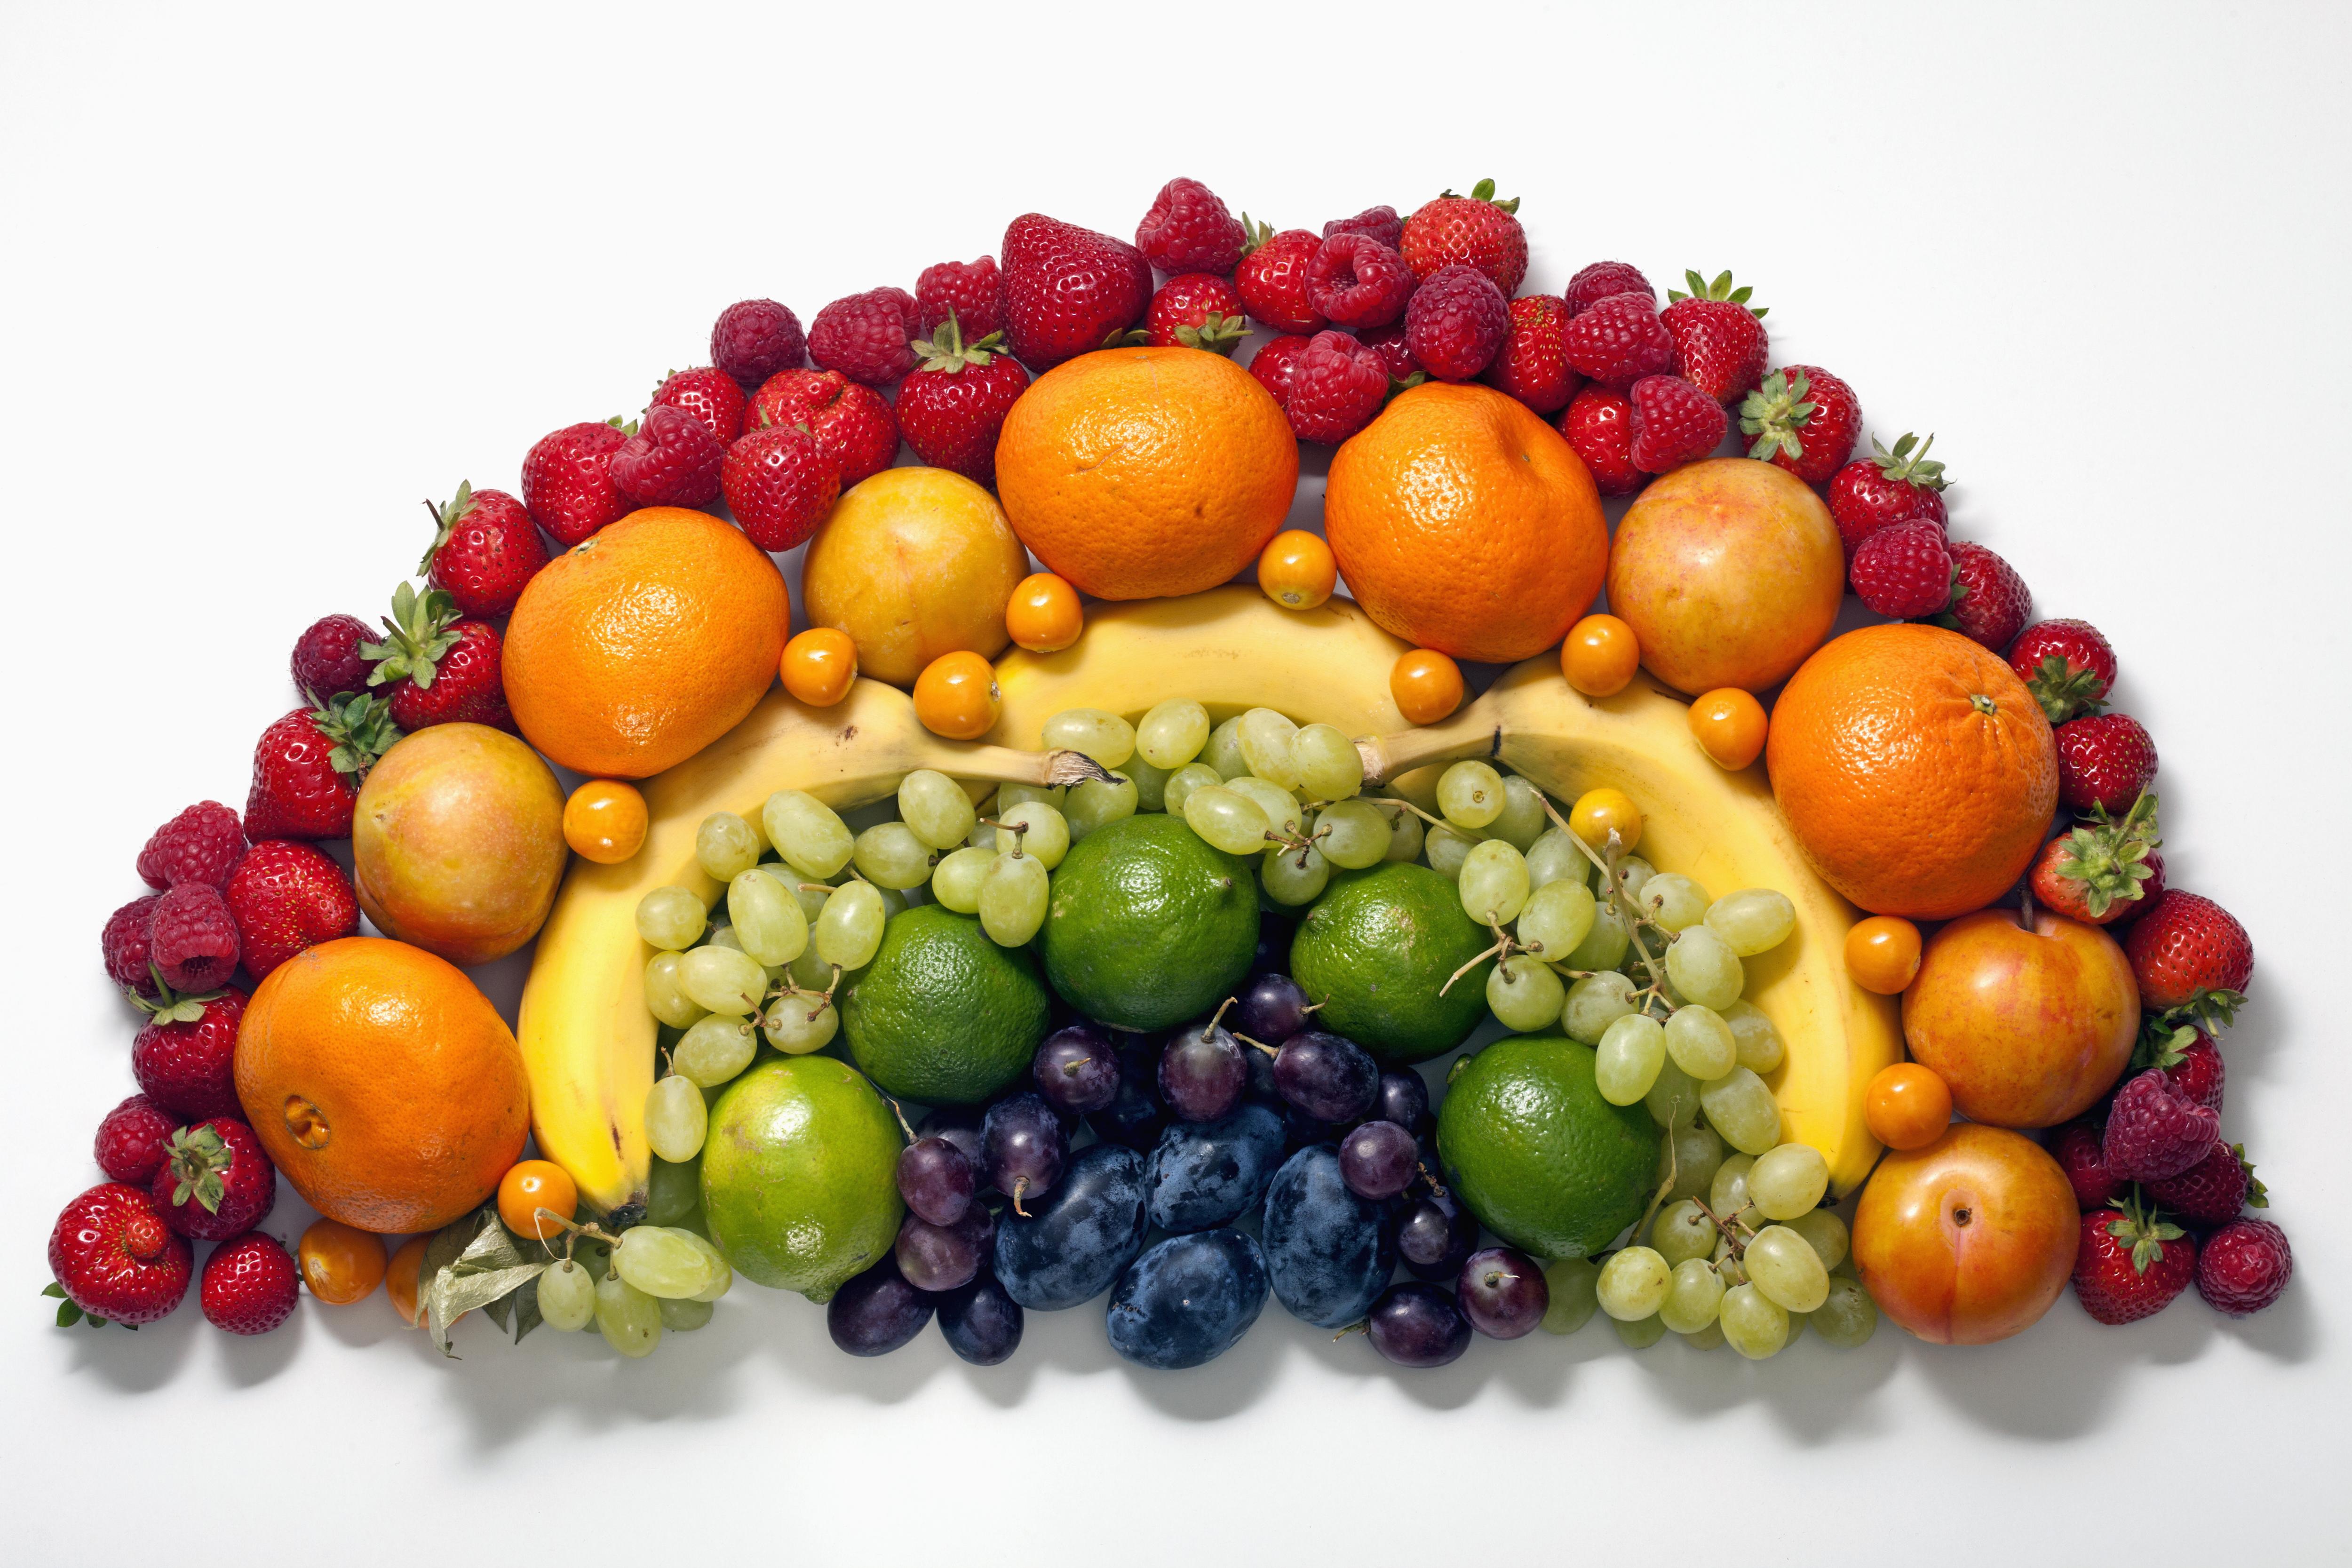 Ешь больше фруктов и овощей. Овощи и фрукты. Фрукты. Овощи и фрукты Радуга. Овощи и фрукты по цветам радуги.